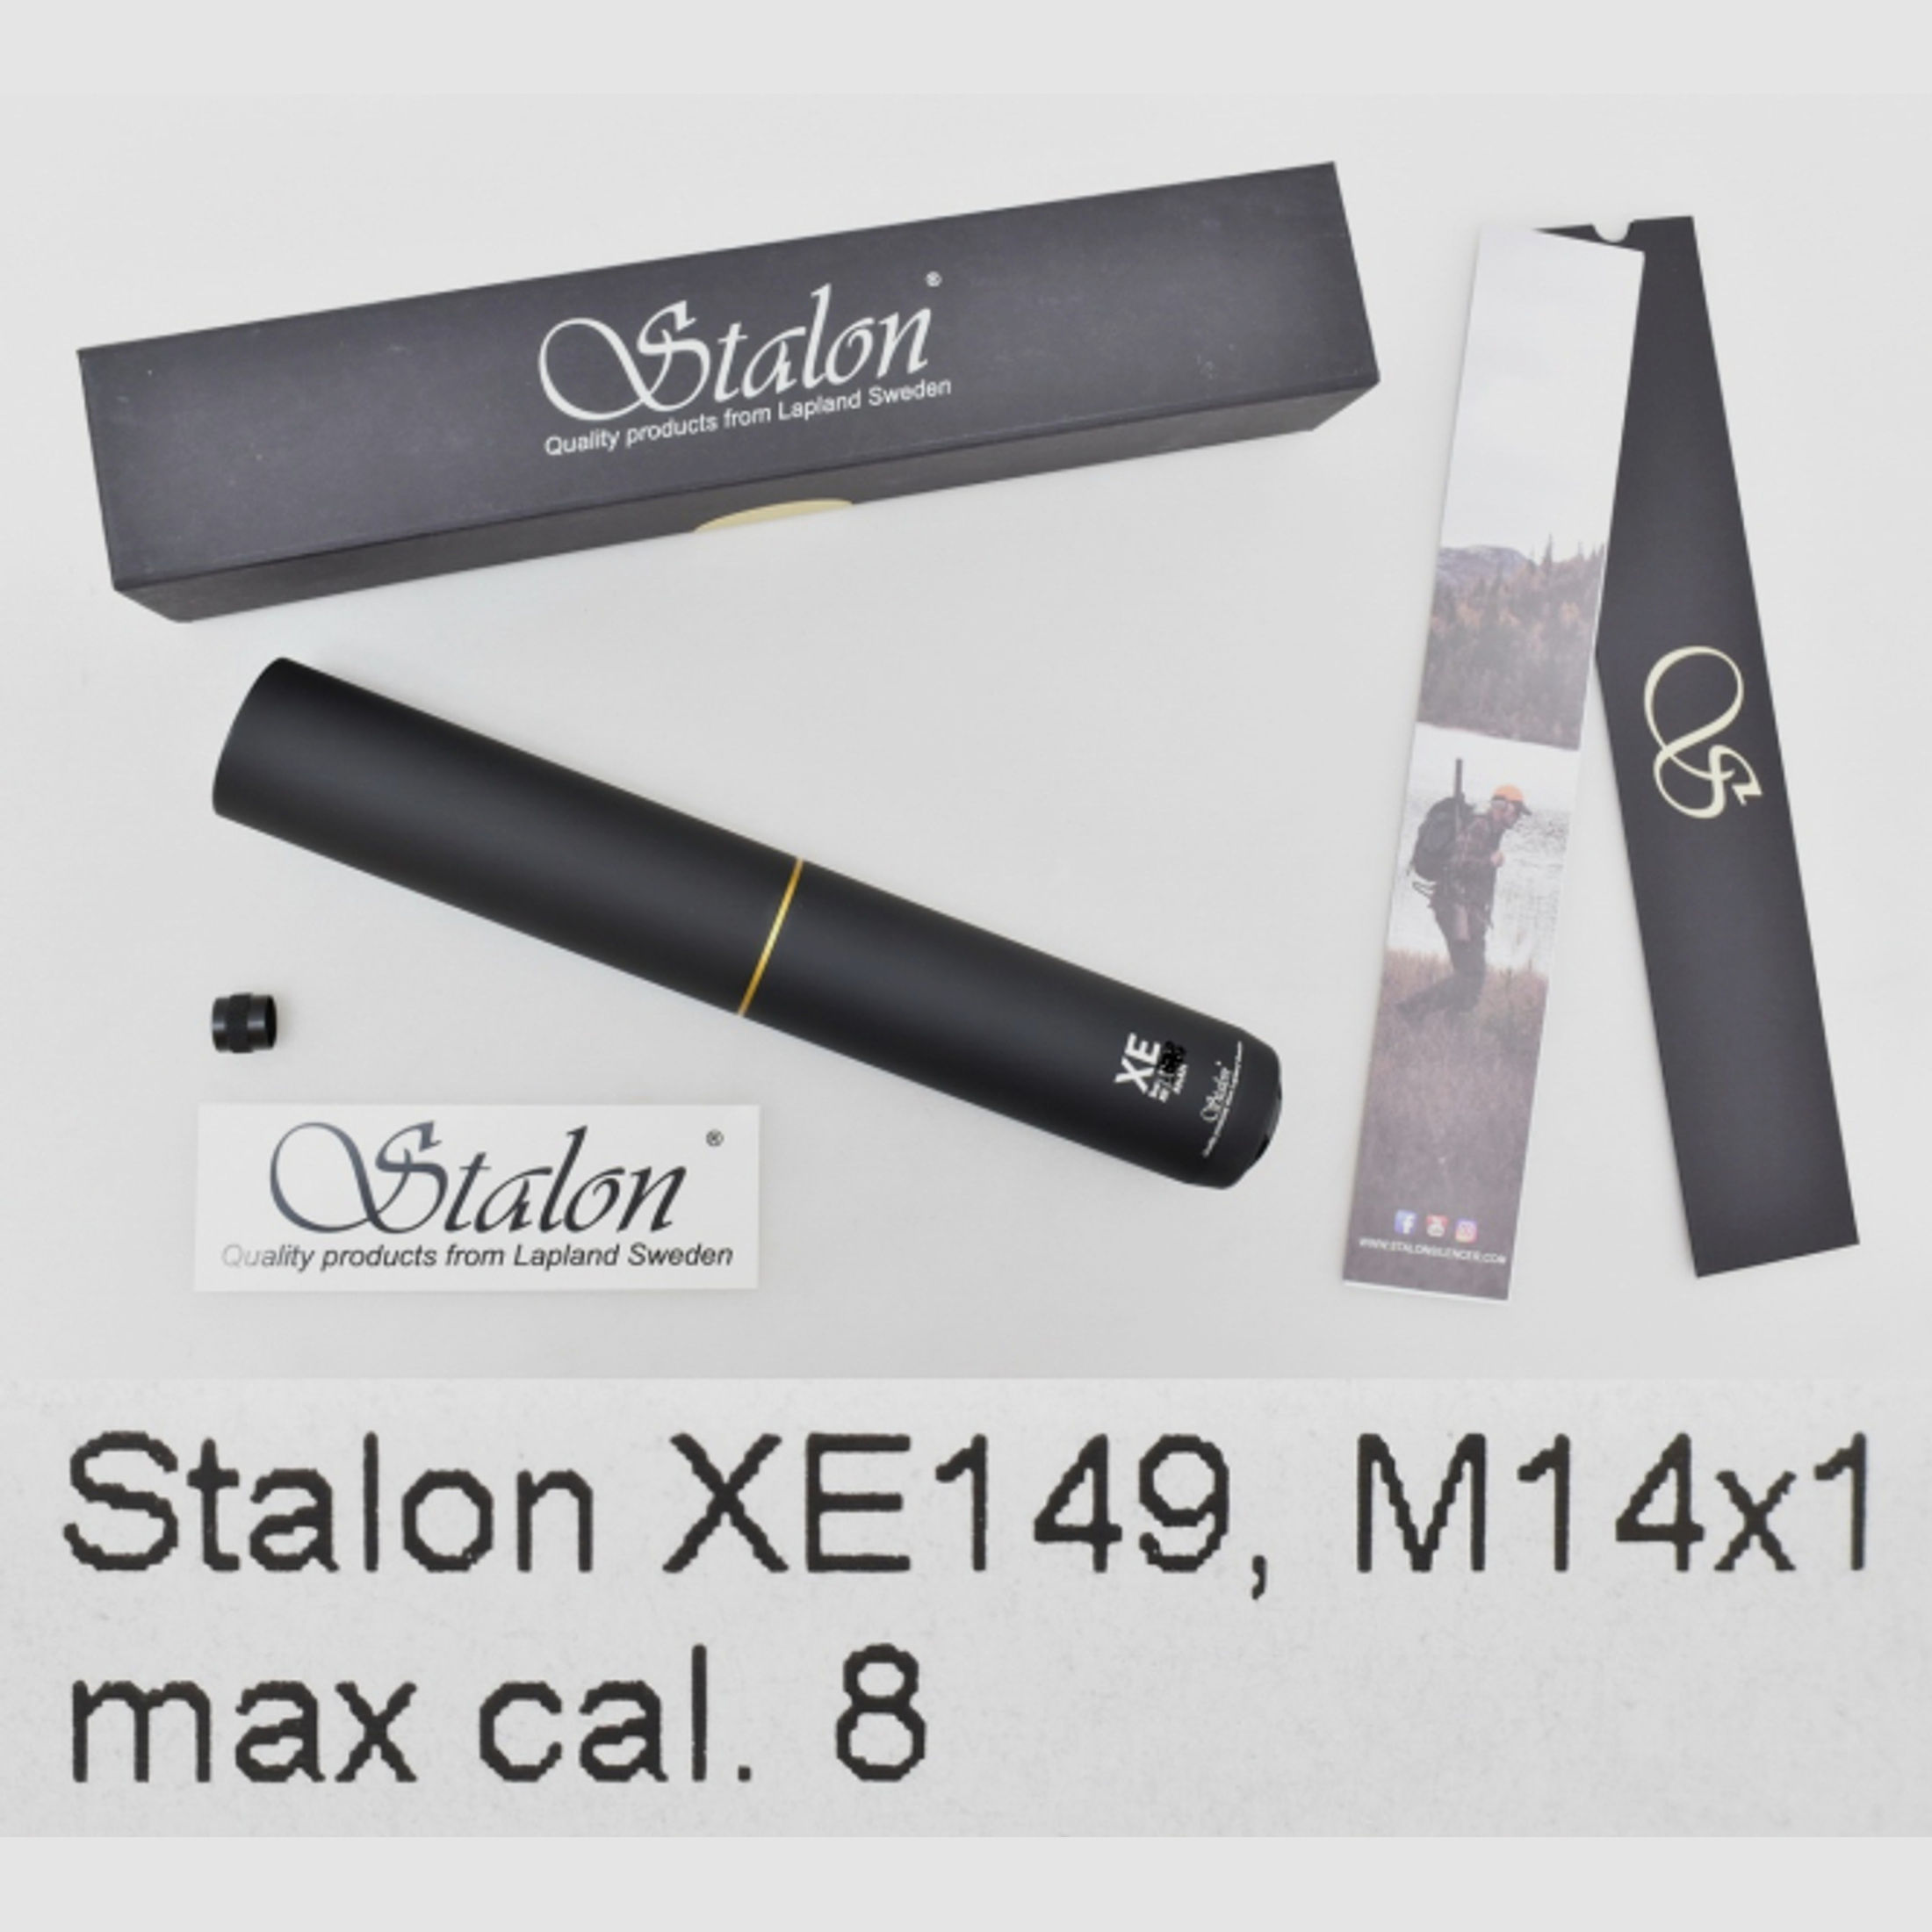 STALON Schalldämpfer / Silencer / SD Modell XE149 für Kaliber bis max. 8mm mit M14x1 Laufgewinde